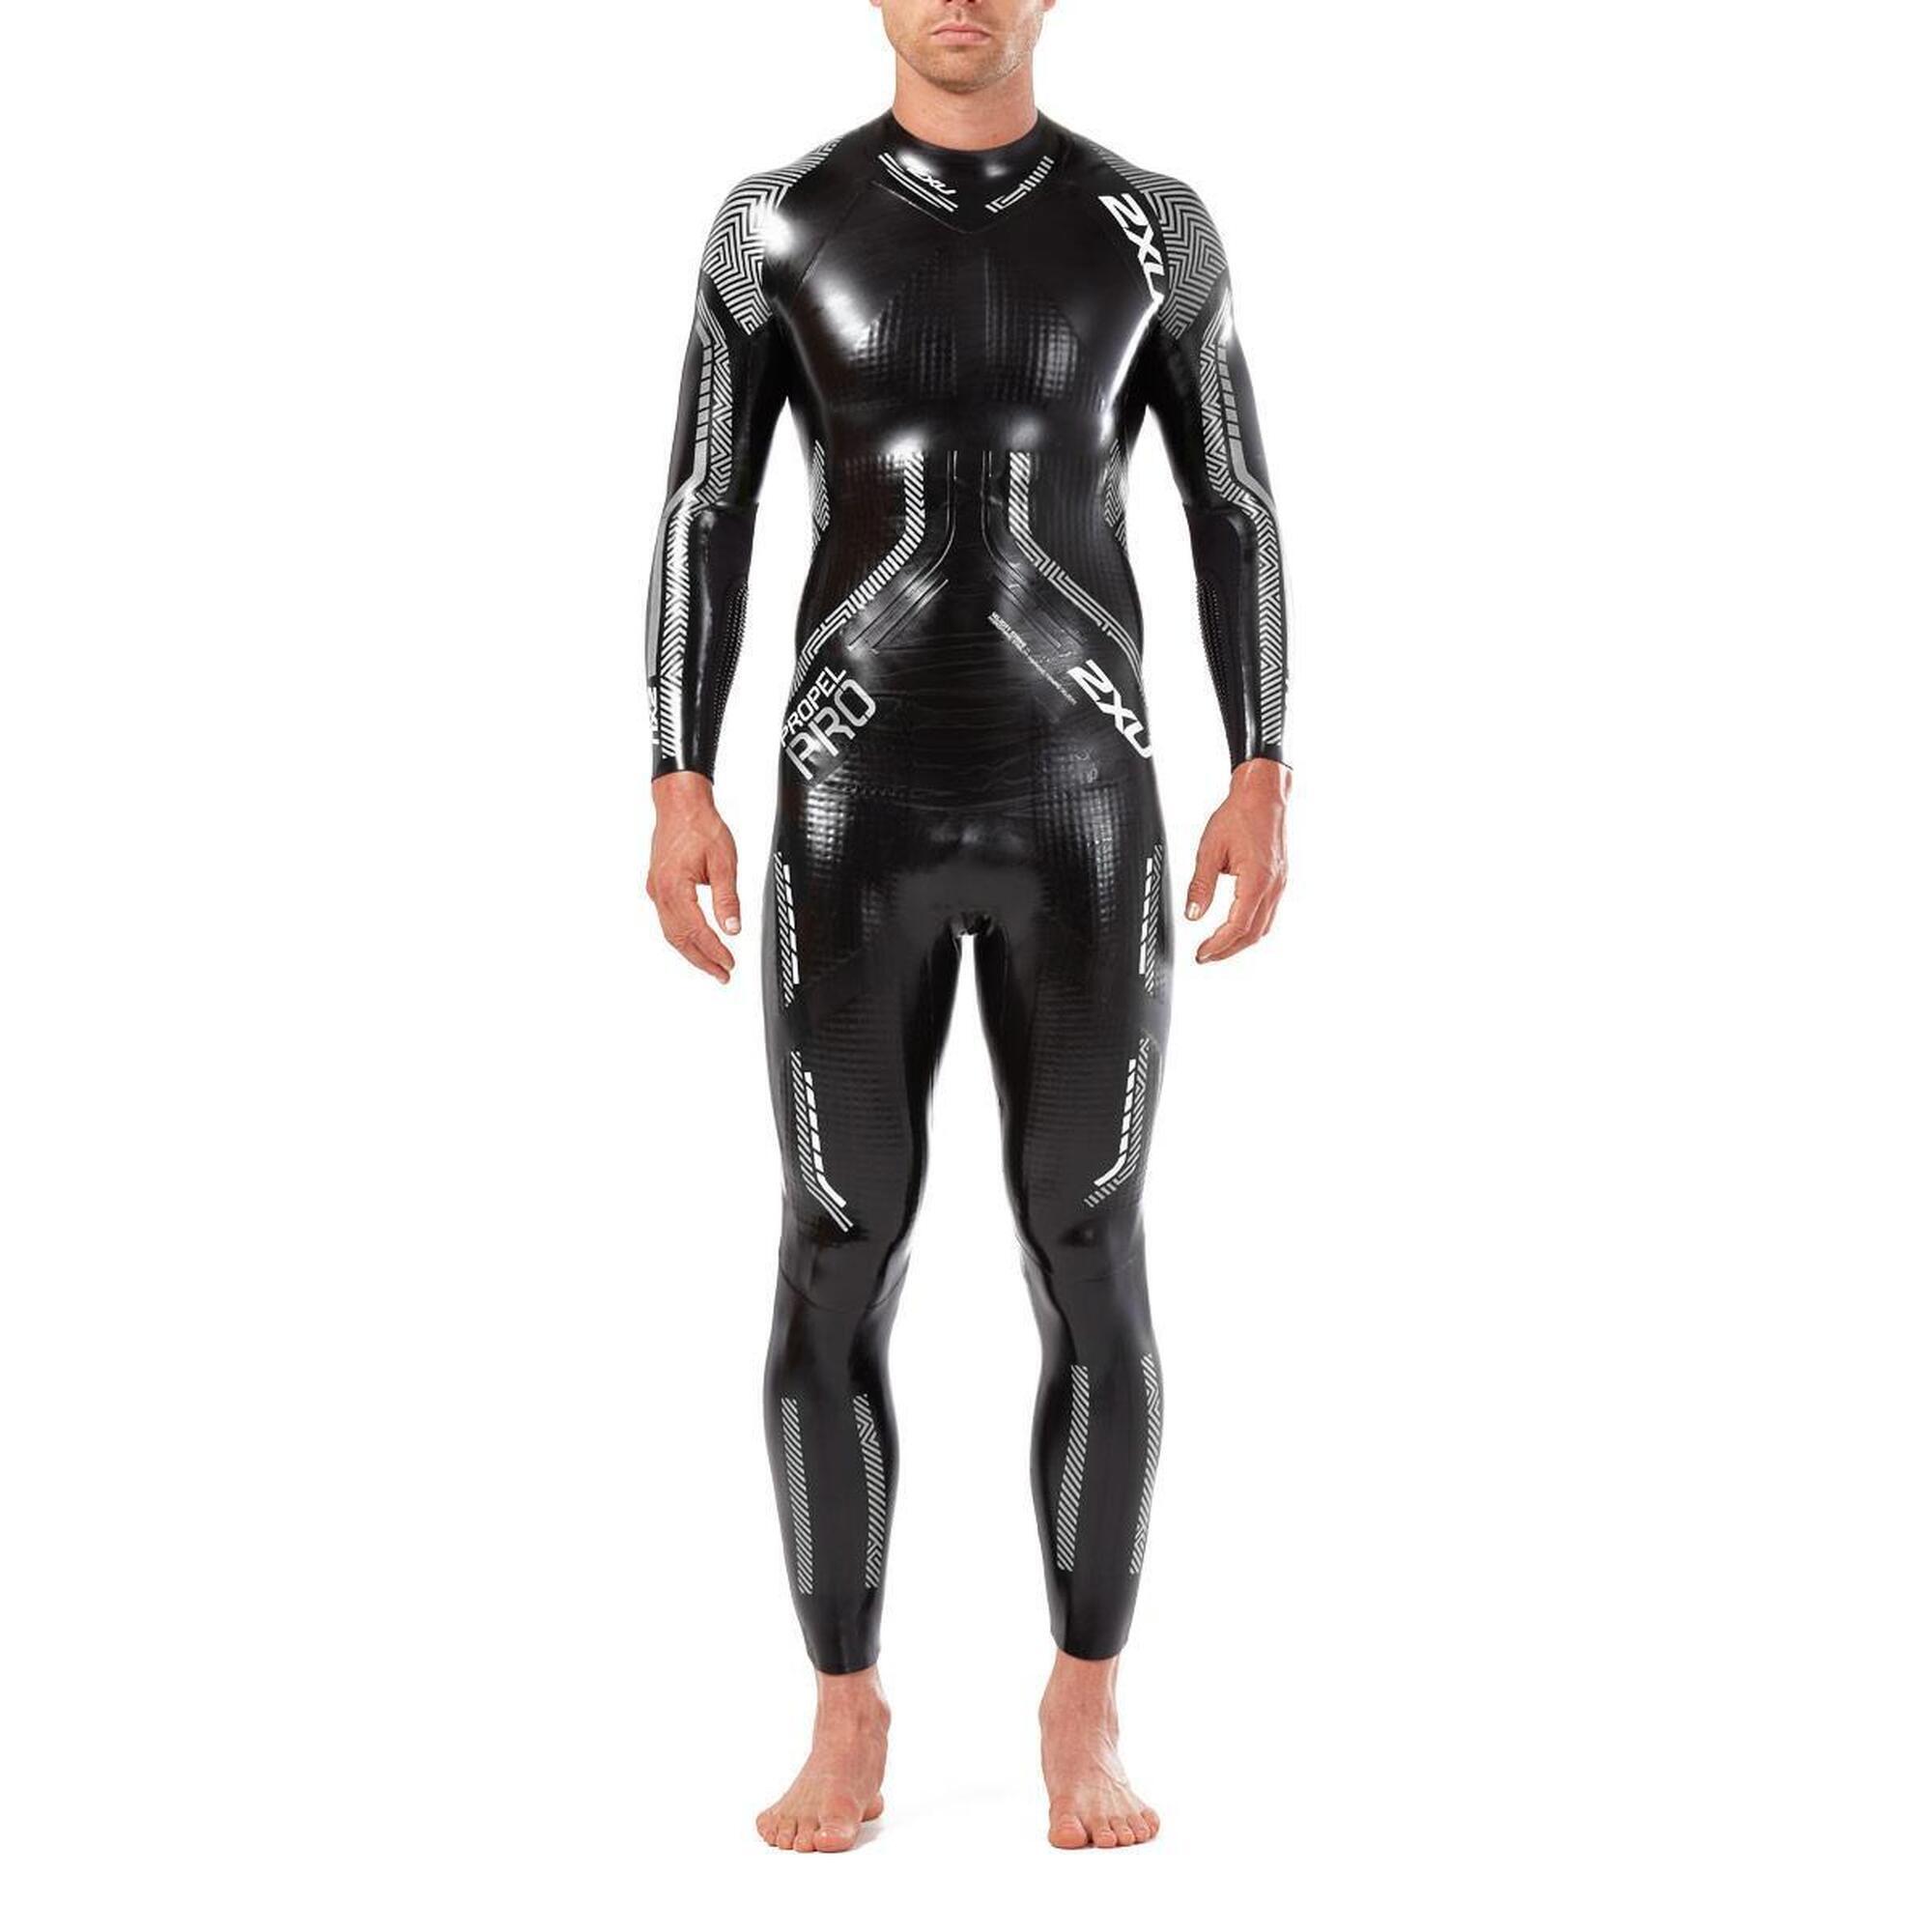 2XU 2XU Men's Propel Pro Wetsuit - Black/Silver - Size L